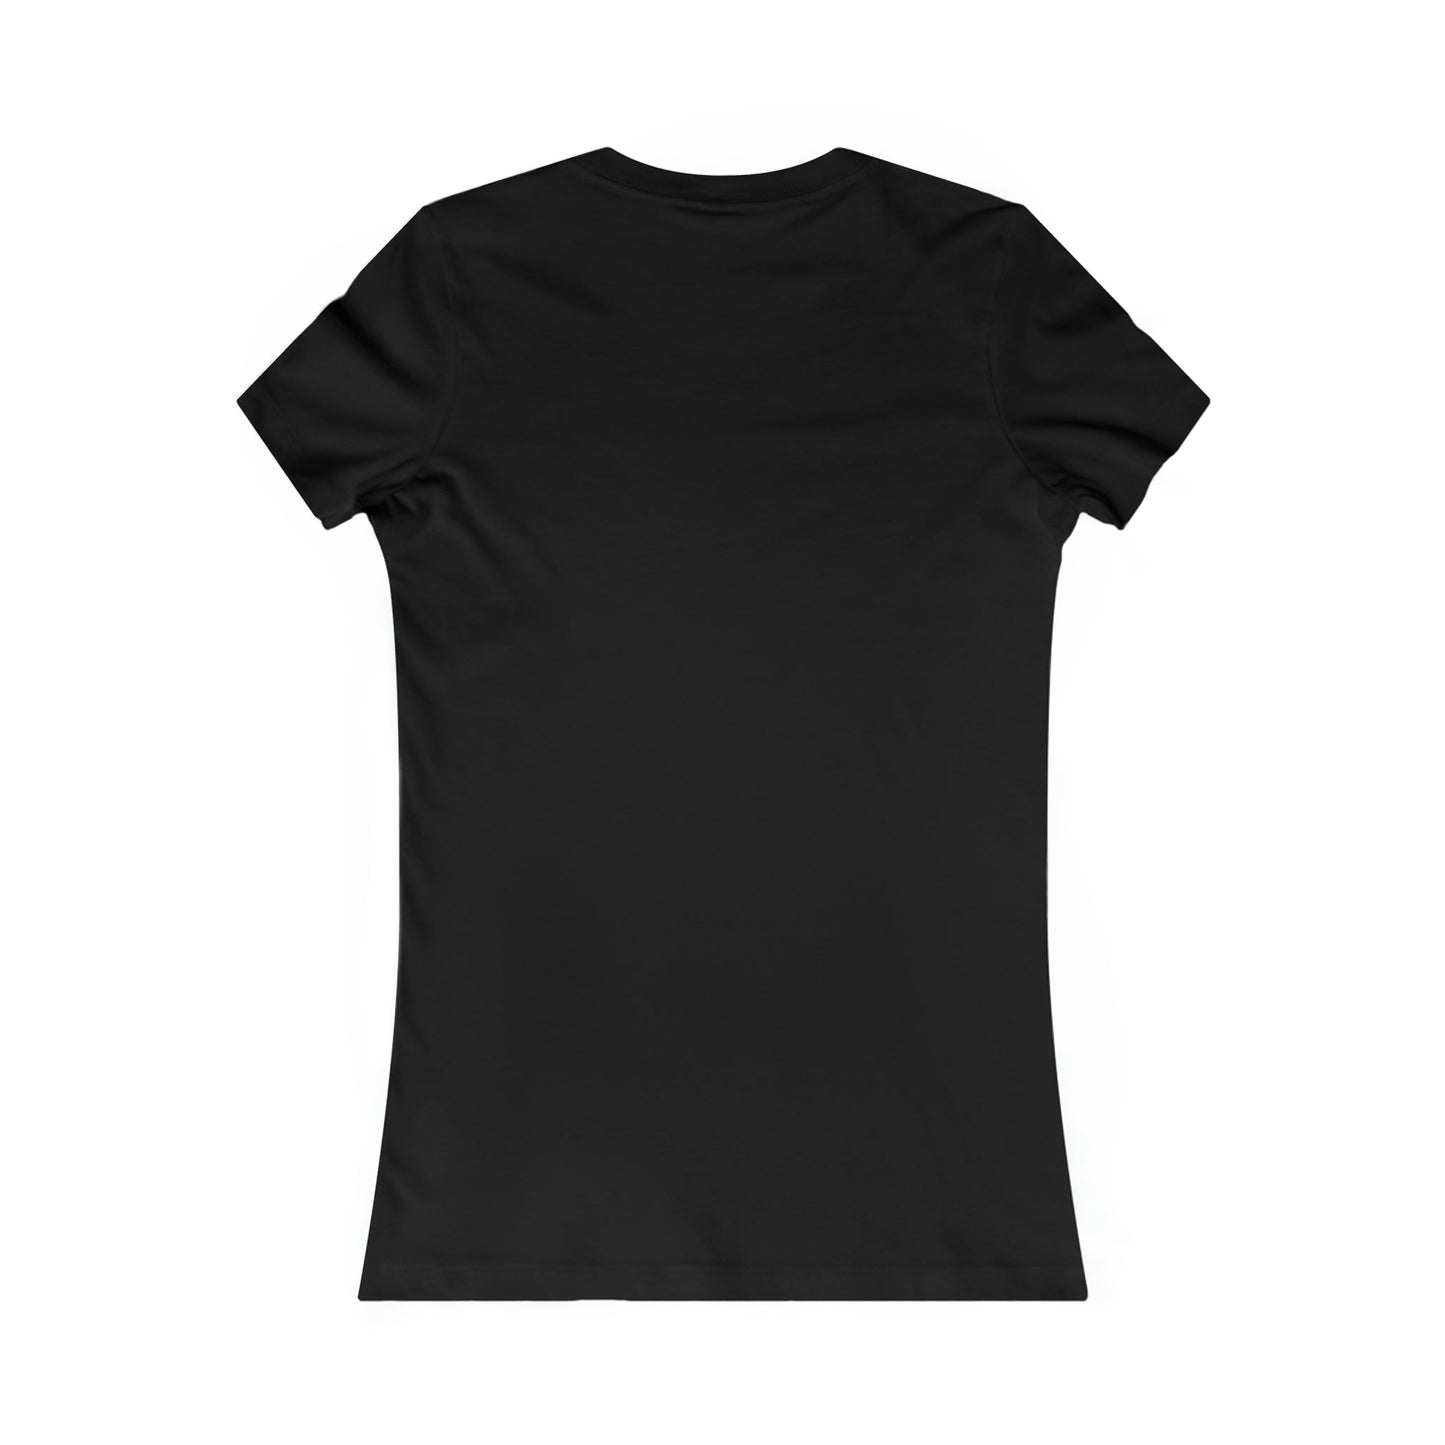 Printify T-Shirt Runic Shield V.K.N.G™  T-shirt Girly Cut